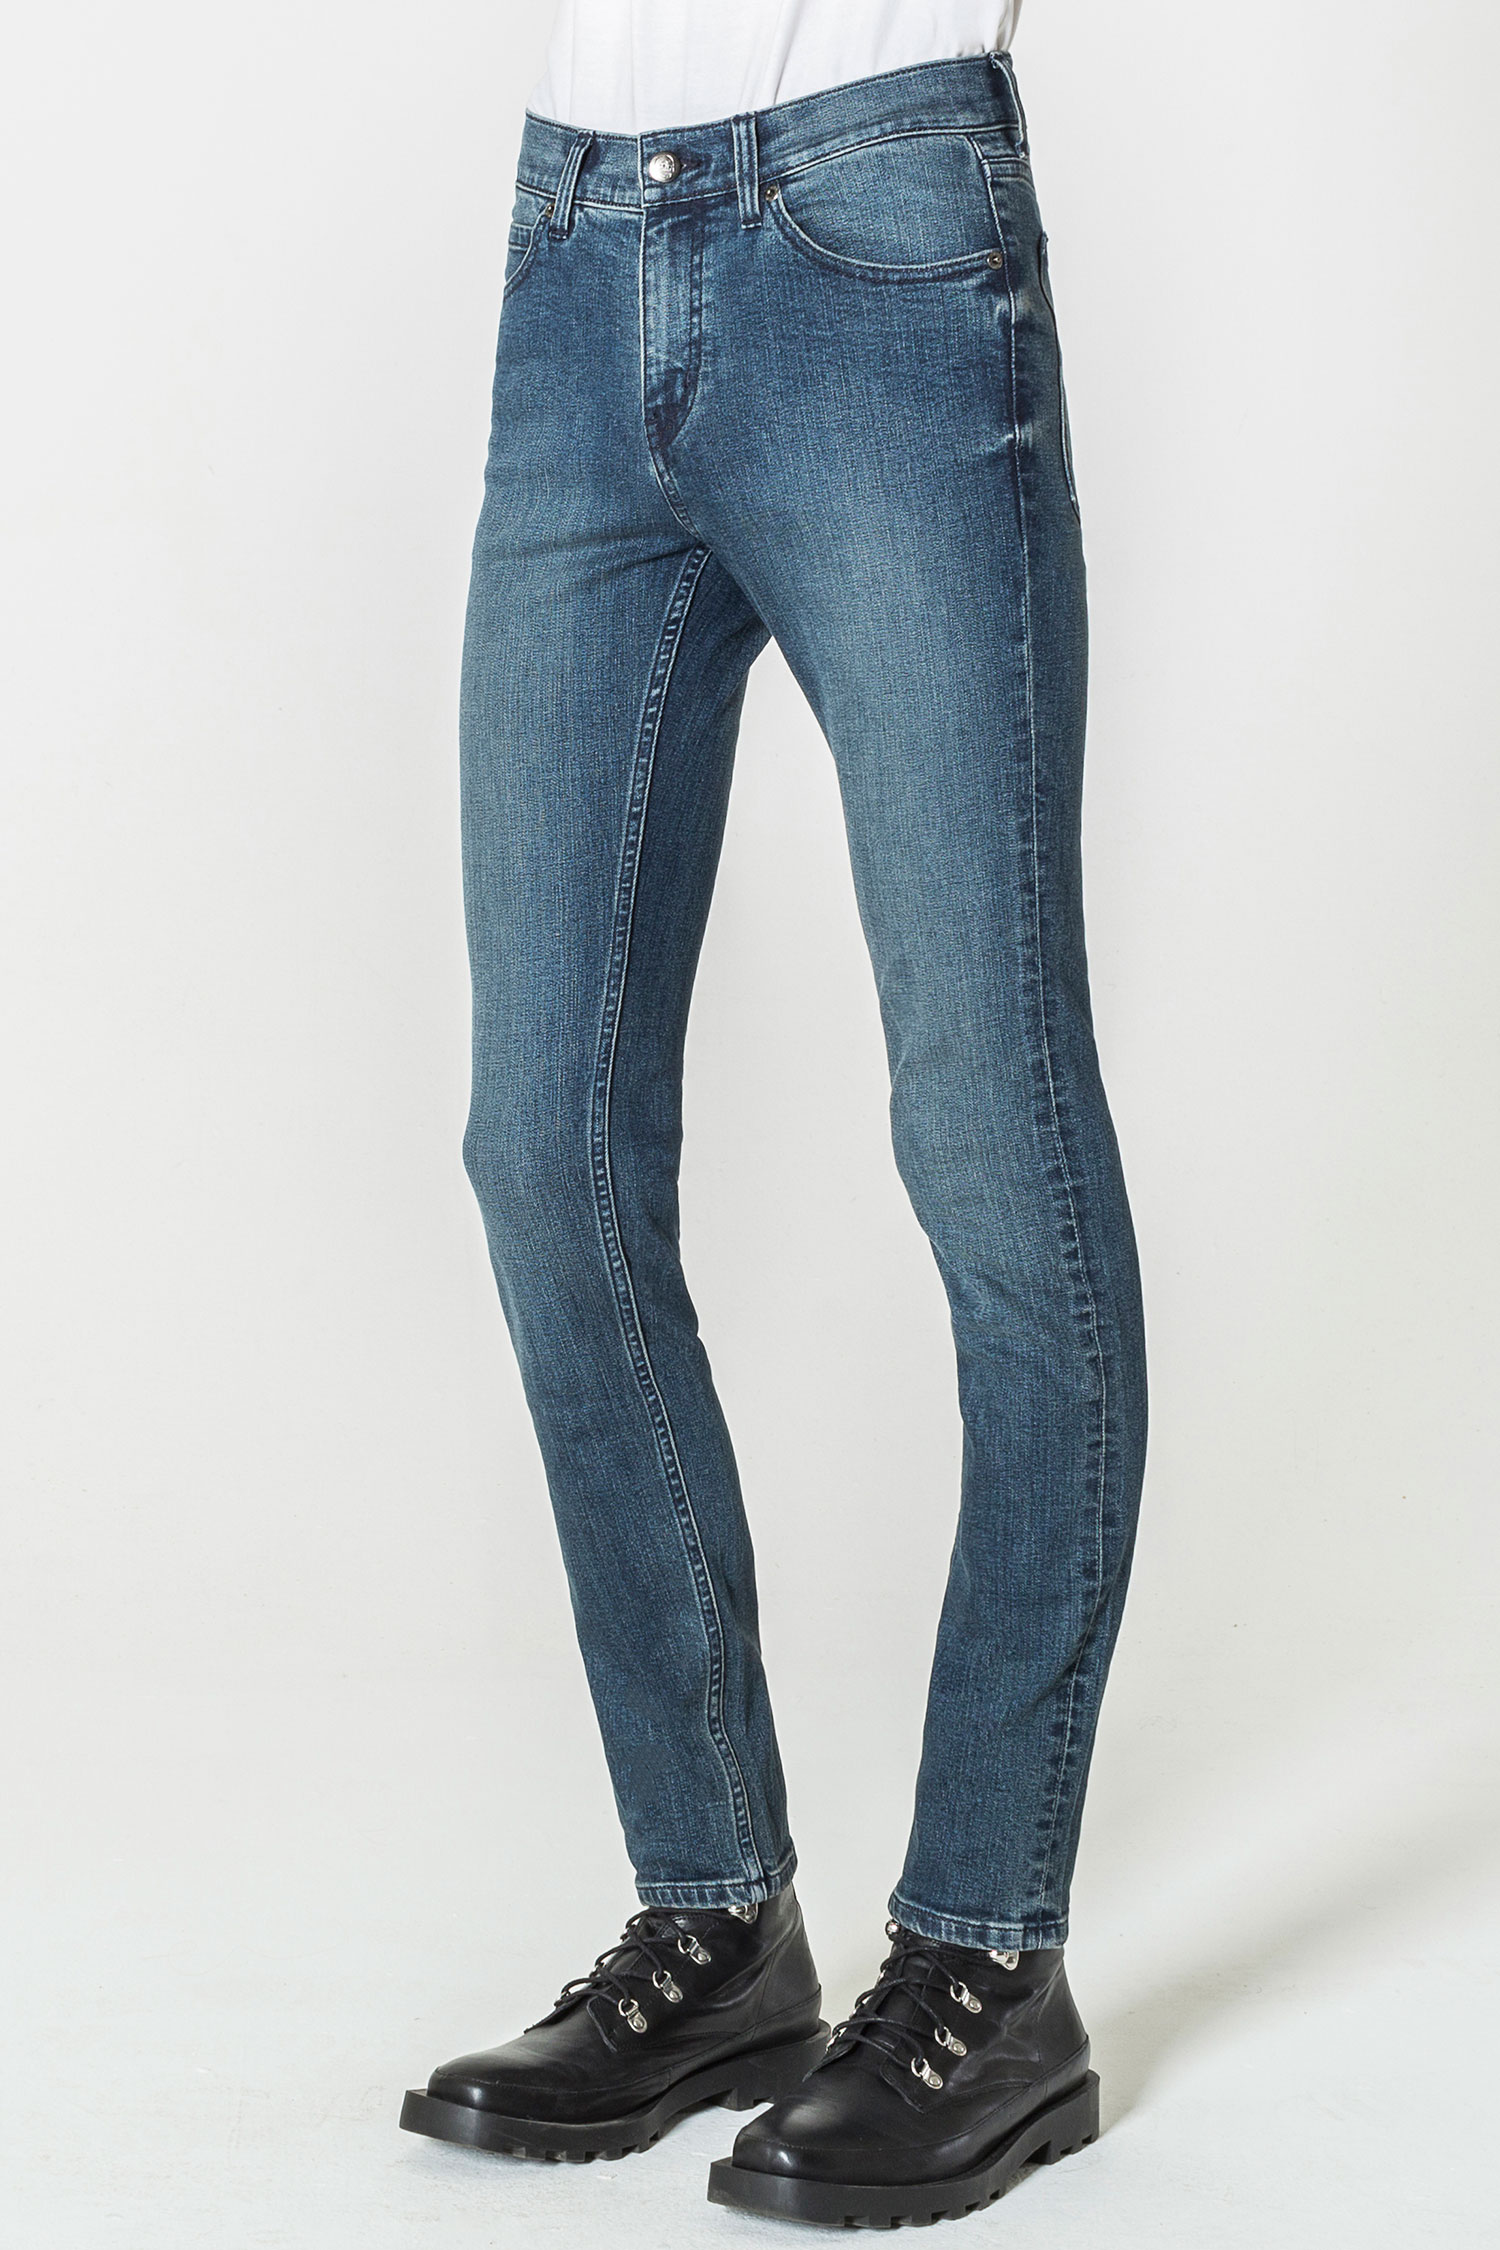 Grosir Distributor Celana Jeans Levis 06 Harga Murah Bagus Berkualitas